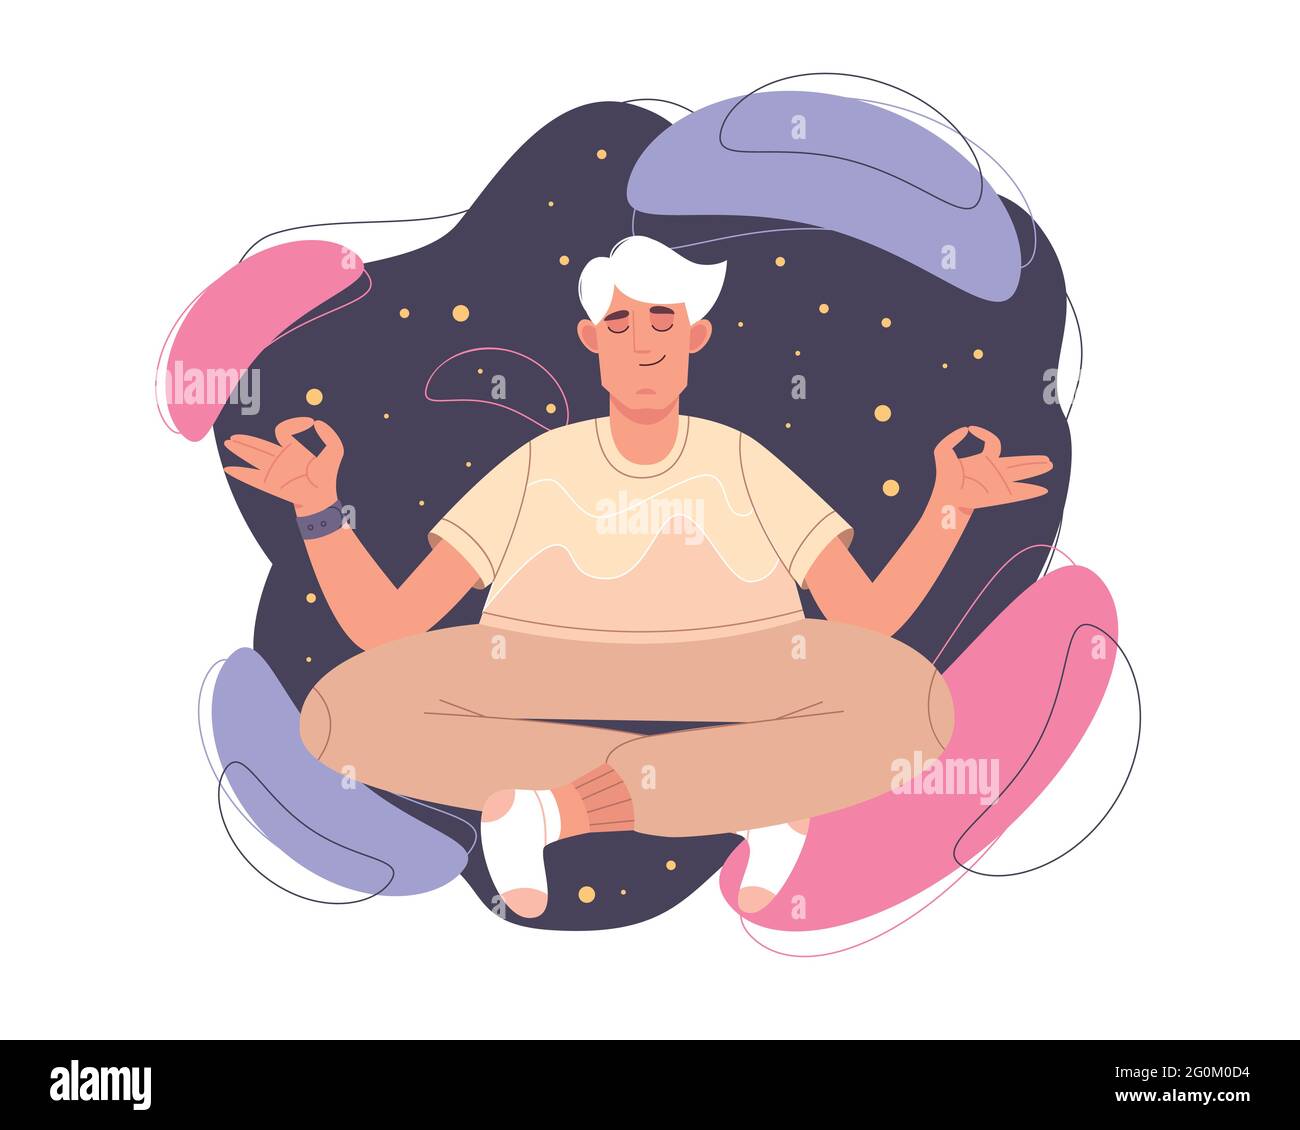 Uomo calmo piatto con occhi chiusi e gambe incrociate meditando in yoga lotus postura. Persona felice che fa esercizio di meditazione, pratica di consapevolezza, disciplina spirituale. Concetto di zen, armonia o salute. Illustrazione Vettoriale